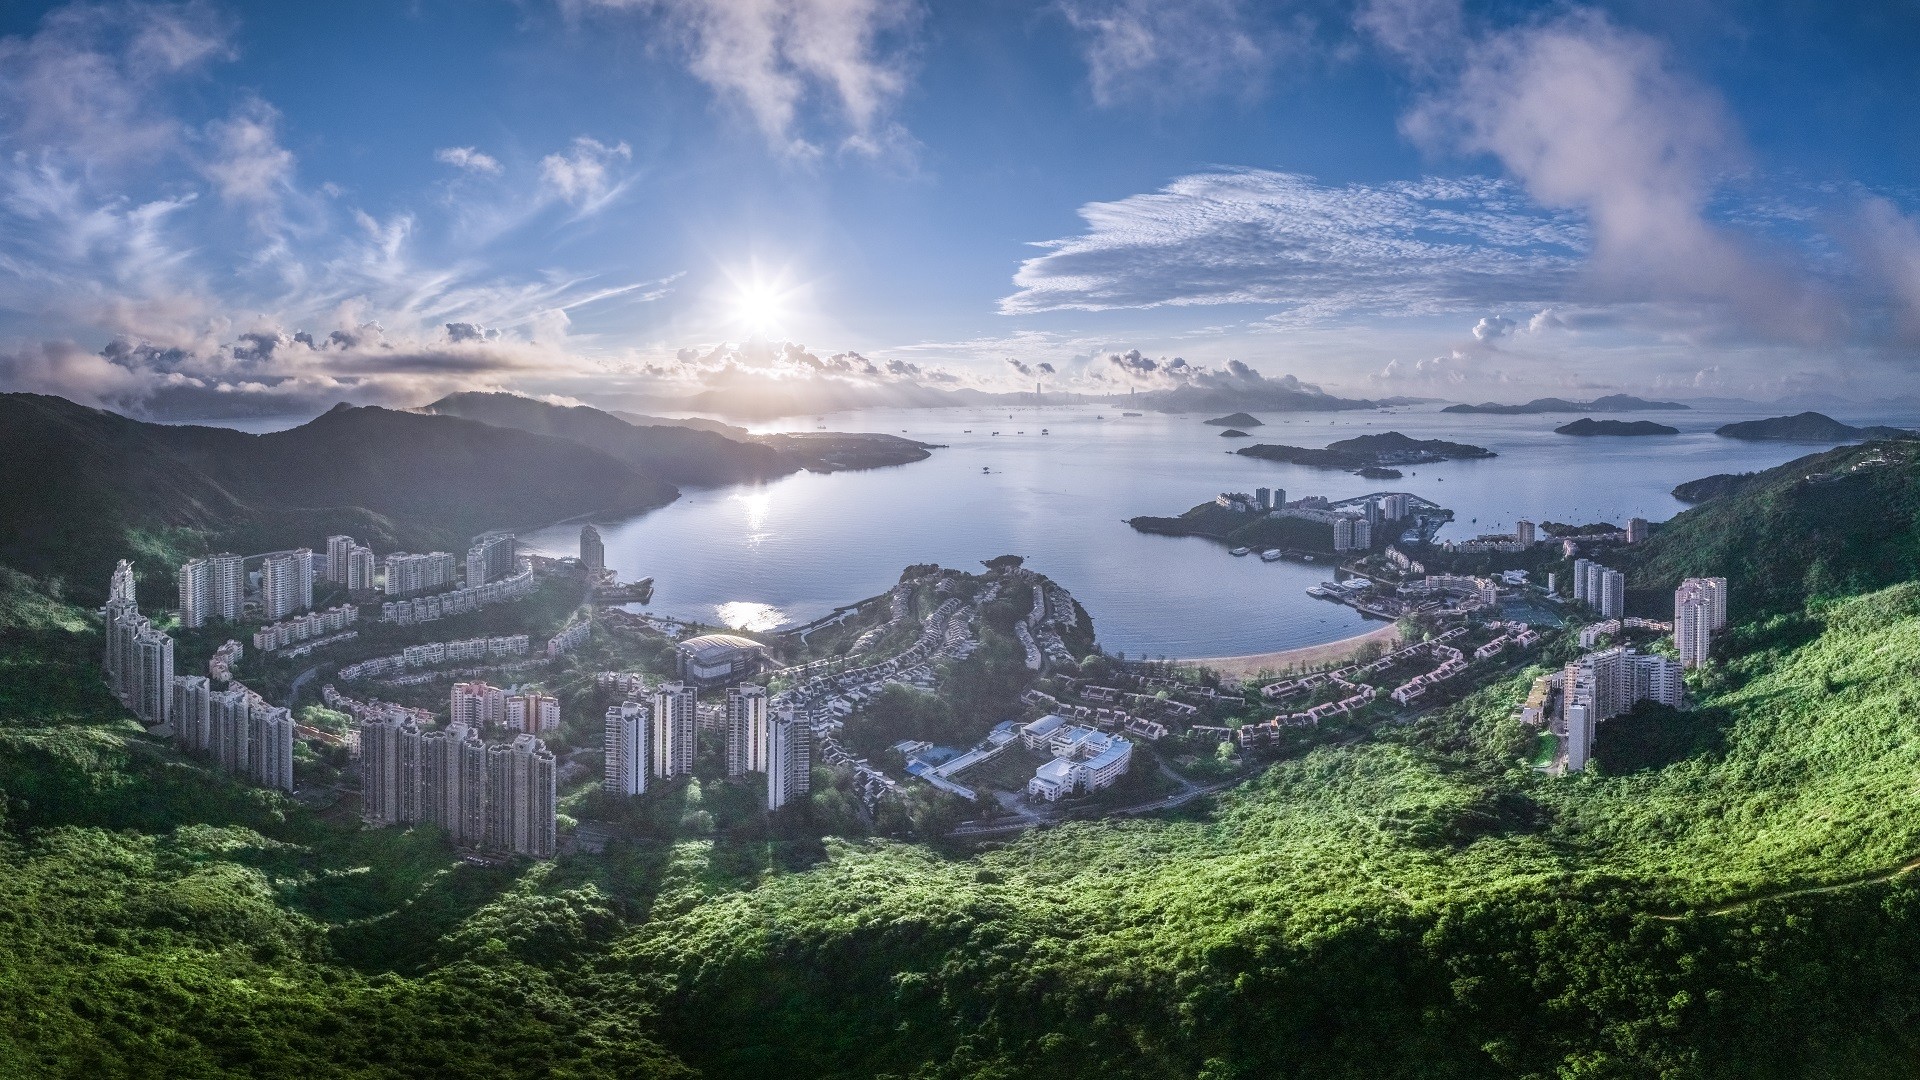 香港兴业国际发起全球设计大赛 探索灵活居住空间新定义